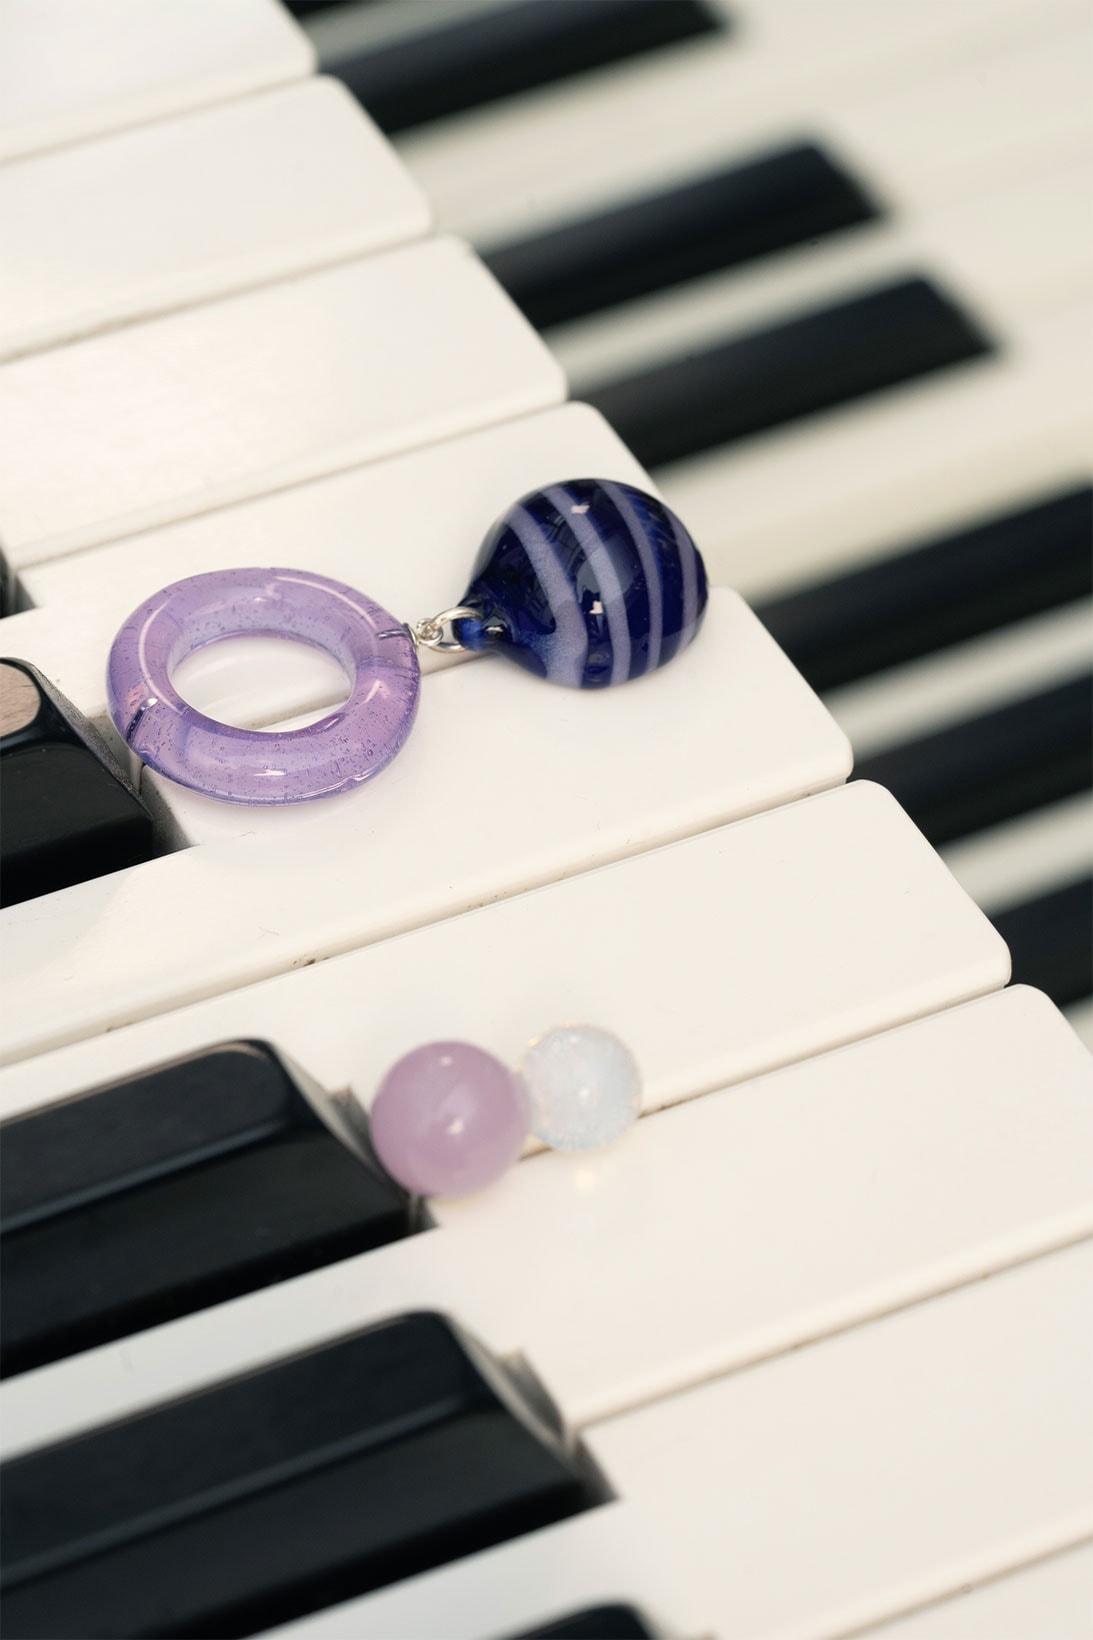 keane brooklyn glass jewelry brand earrings accessories purple blue piano keys